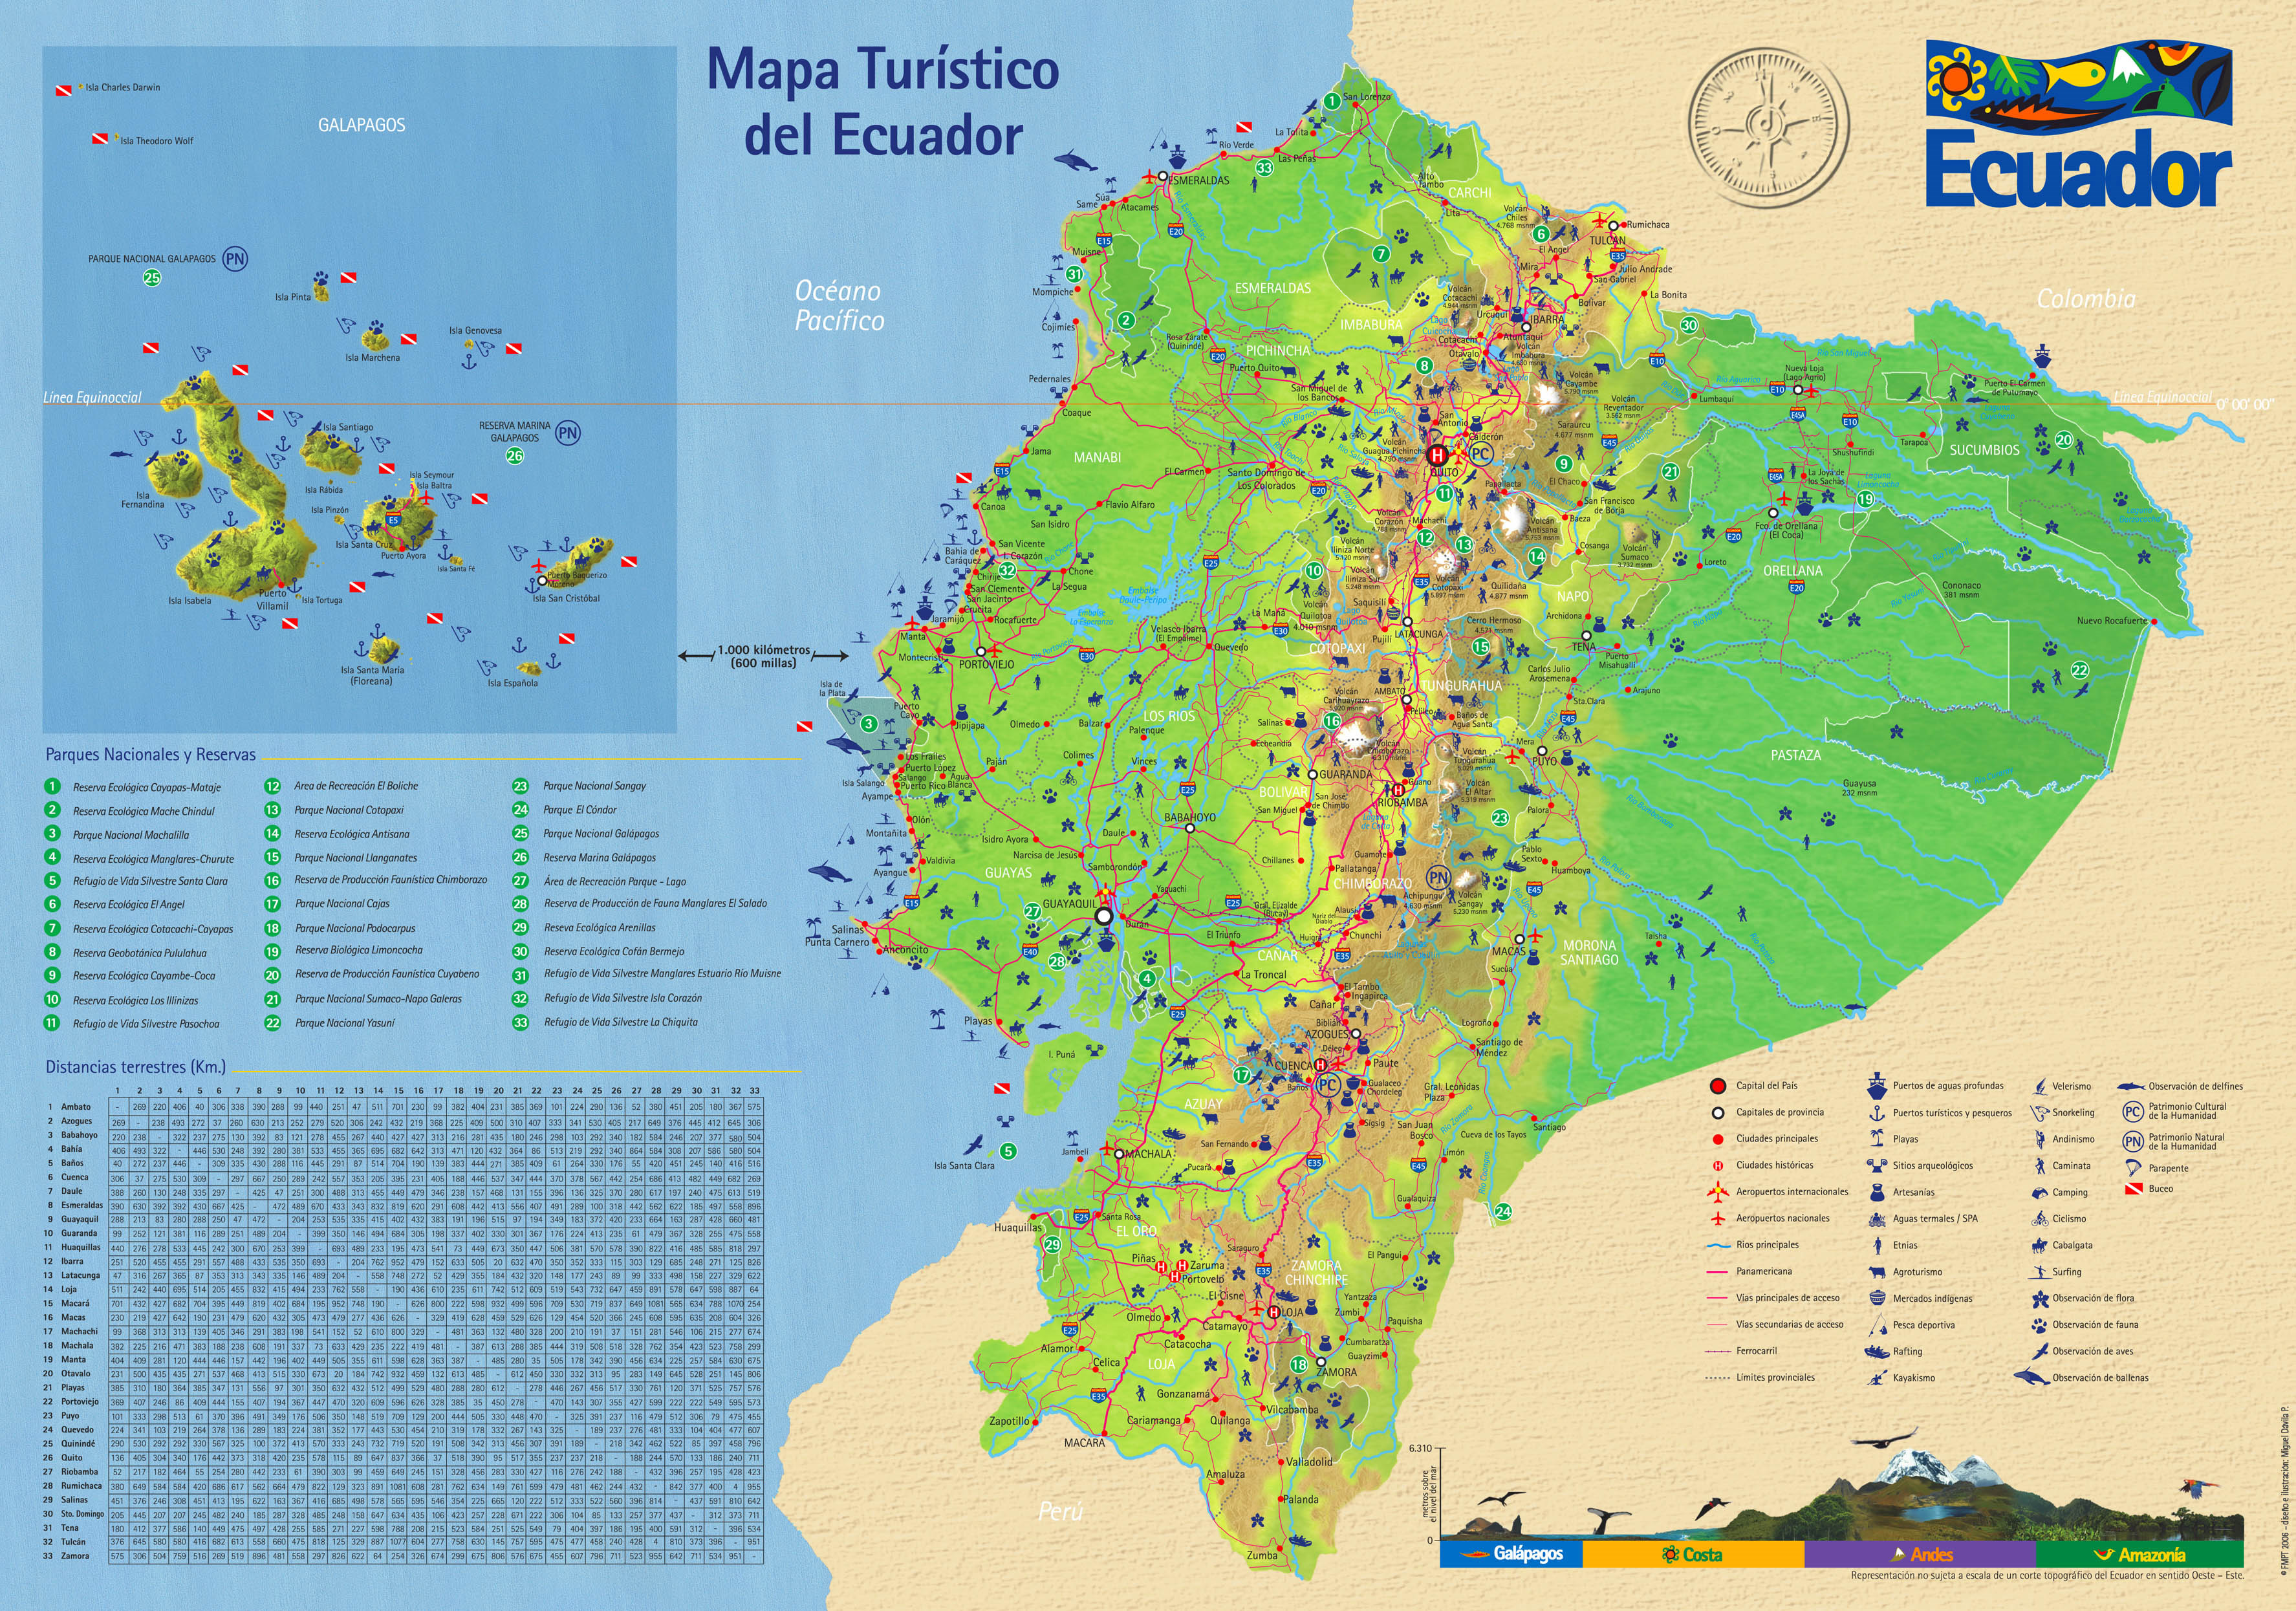 Mapa turístico del Ecuador 2006